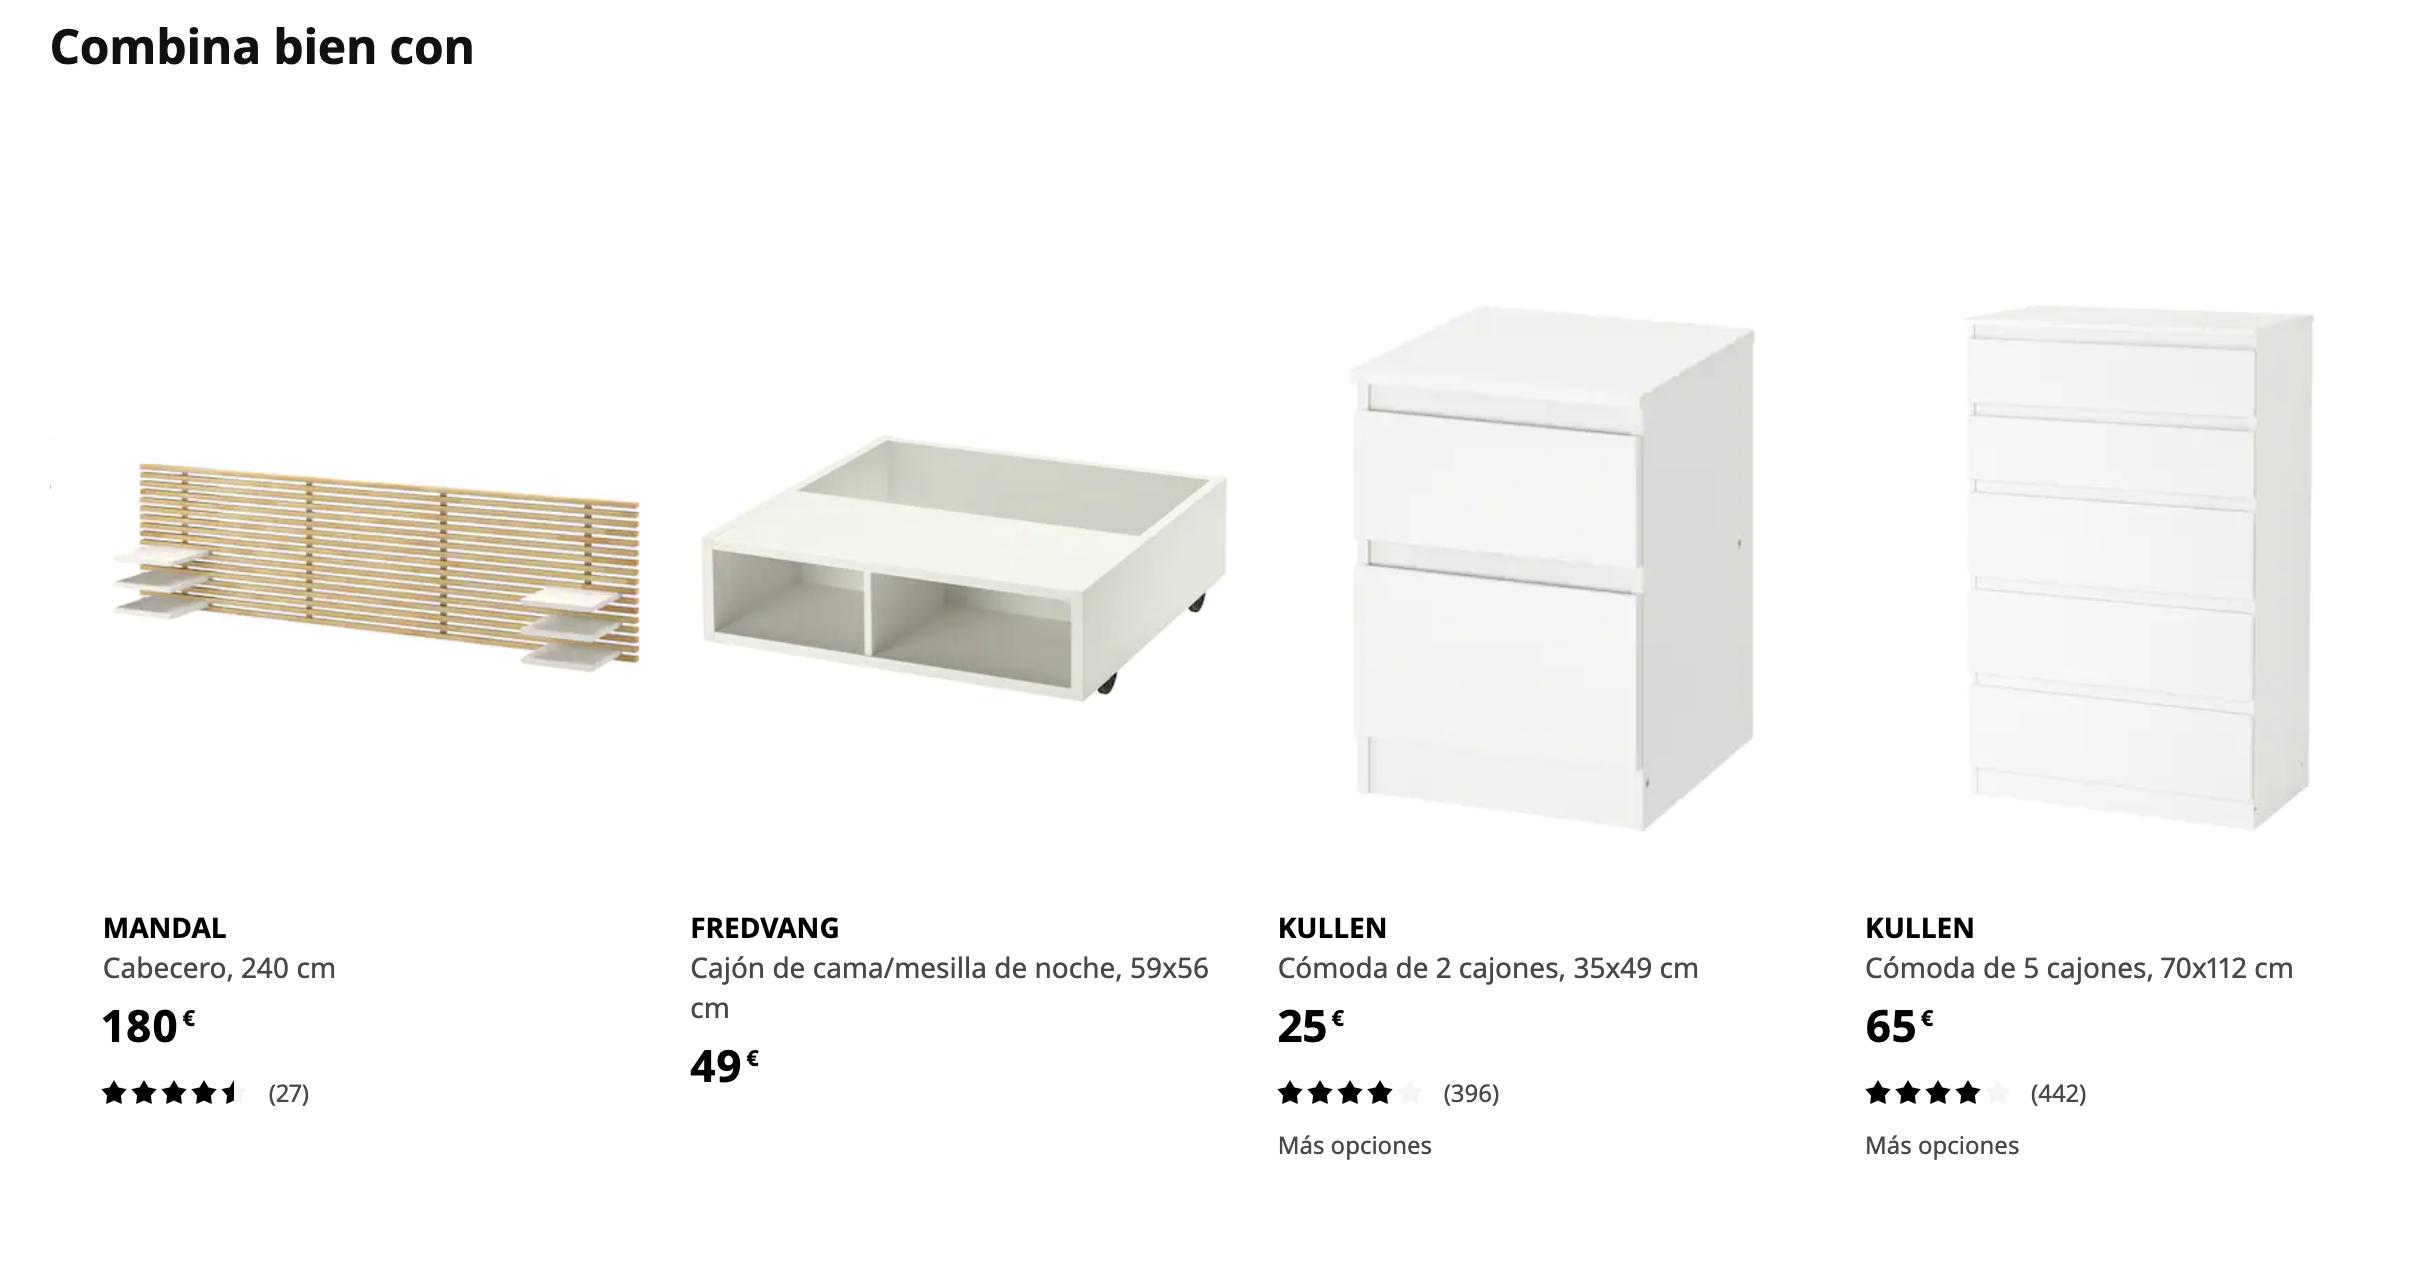 Ejemplo de cross-selling de Ikea